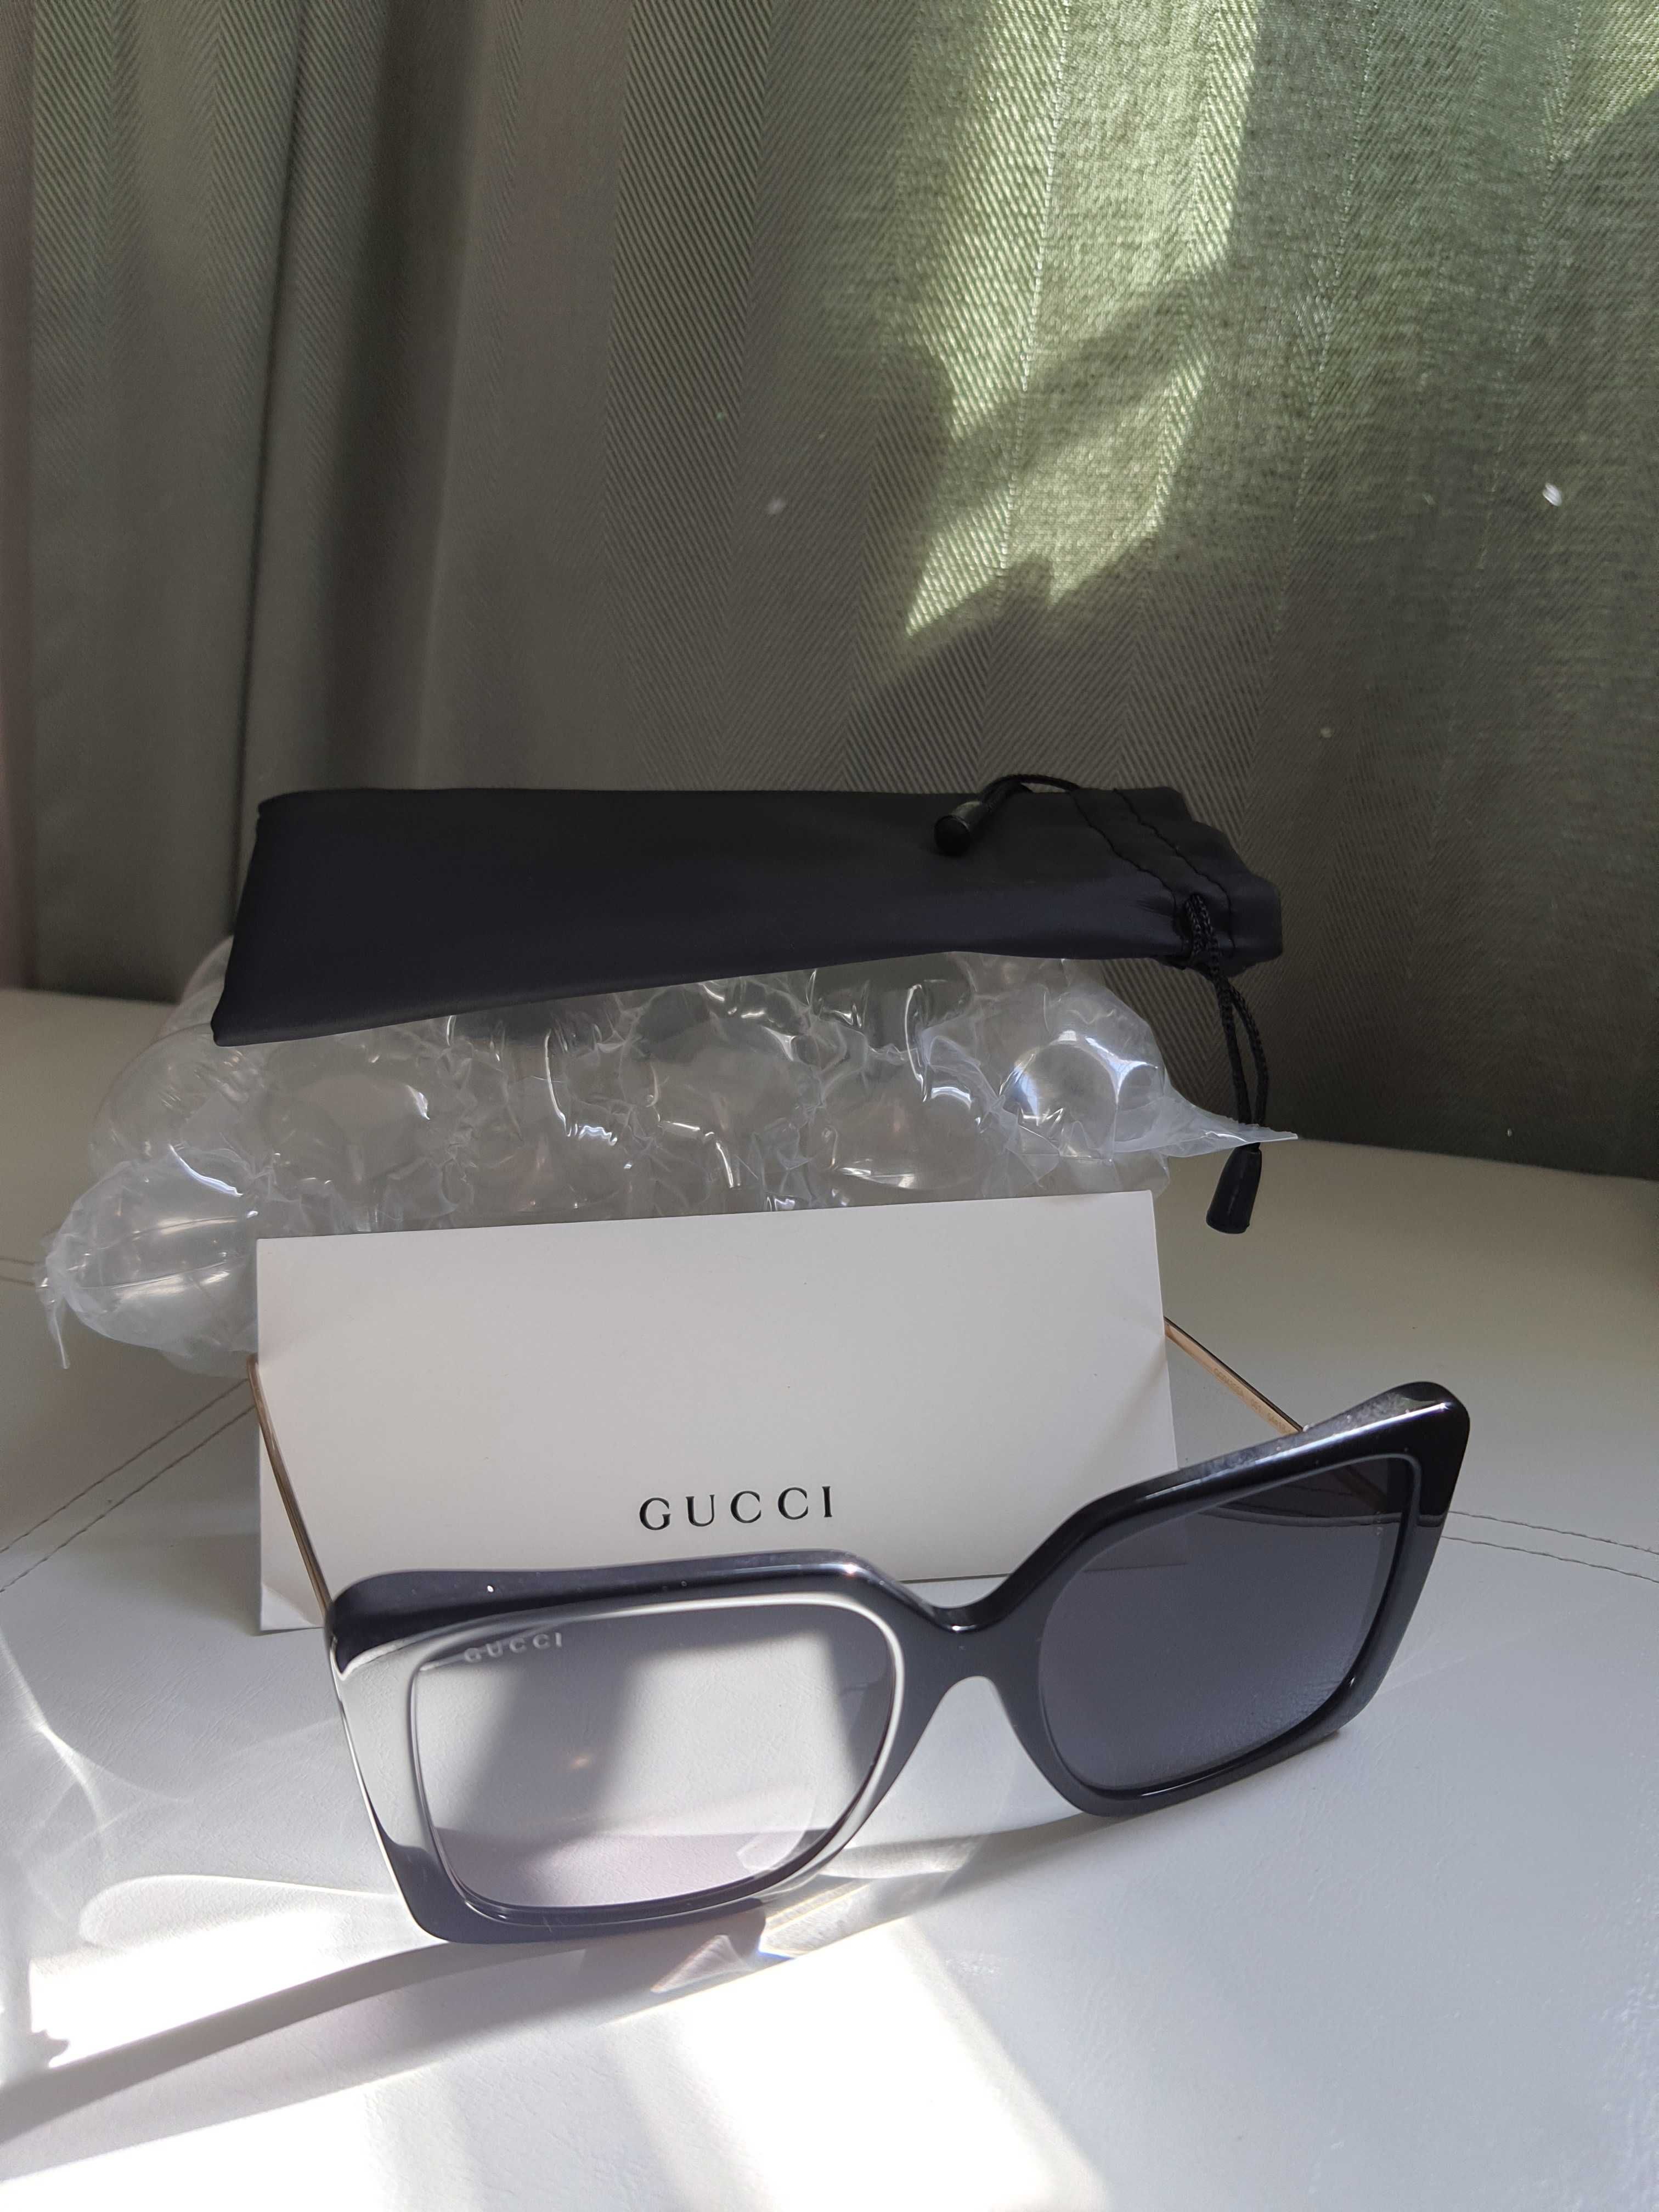 Okulary przeciwsloneczne Gucci, oryginalne, Gucci GG0435SA 001